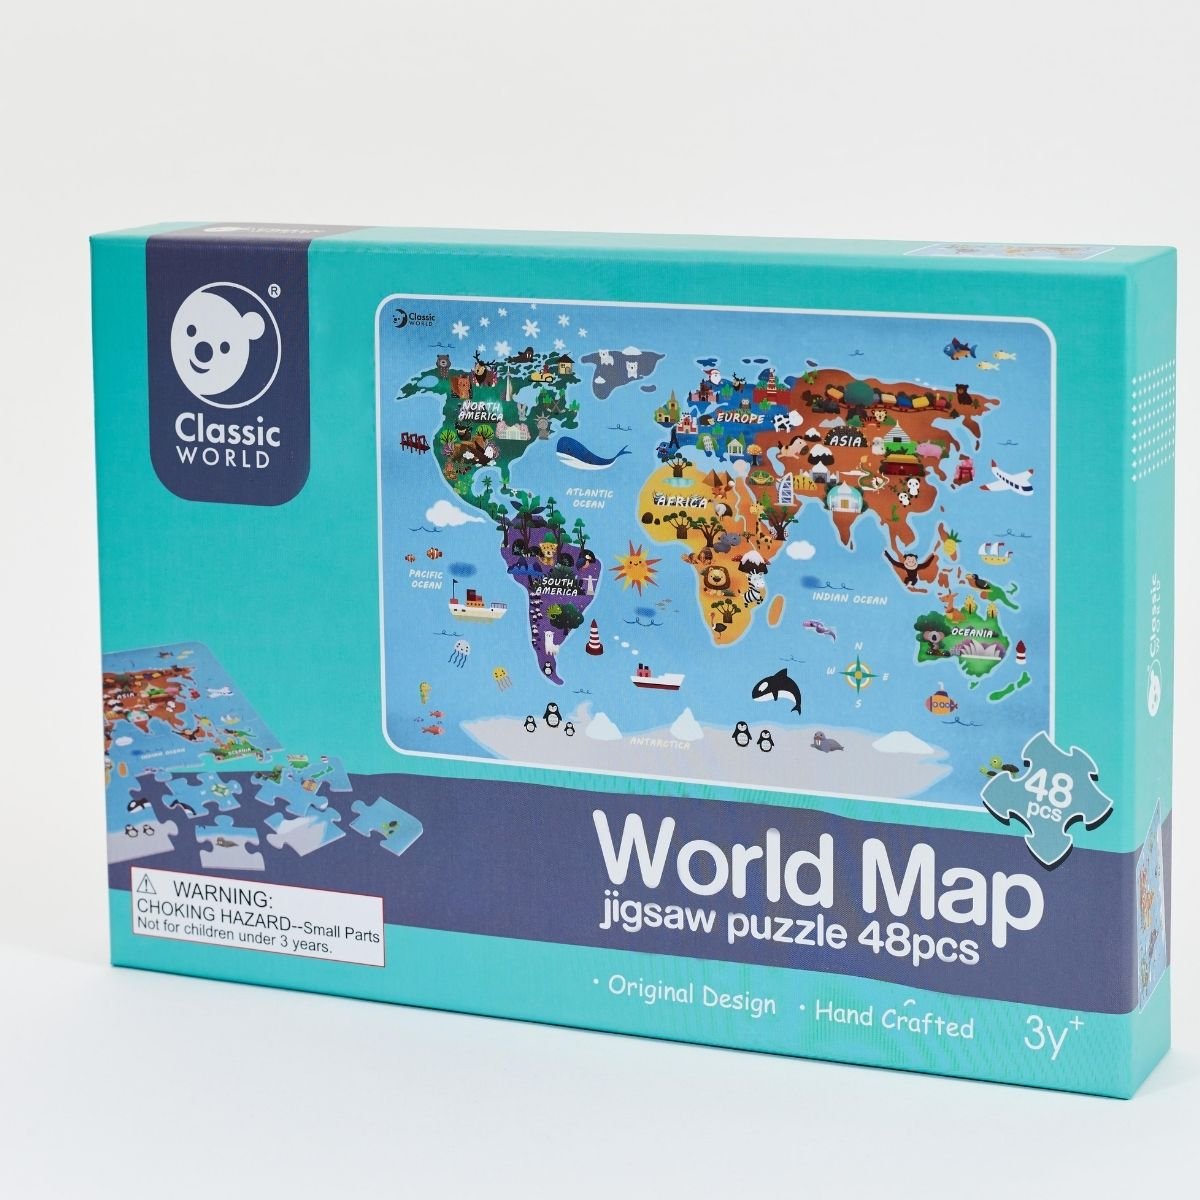 Puzzle Mapa del mundo (48 piezas)